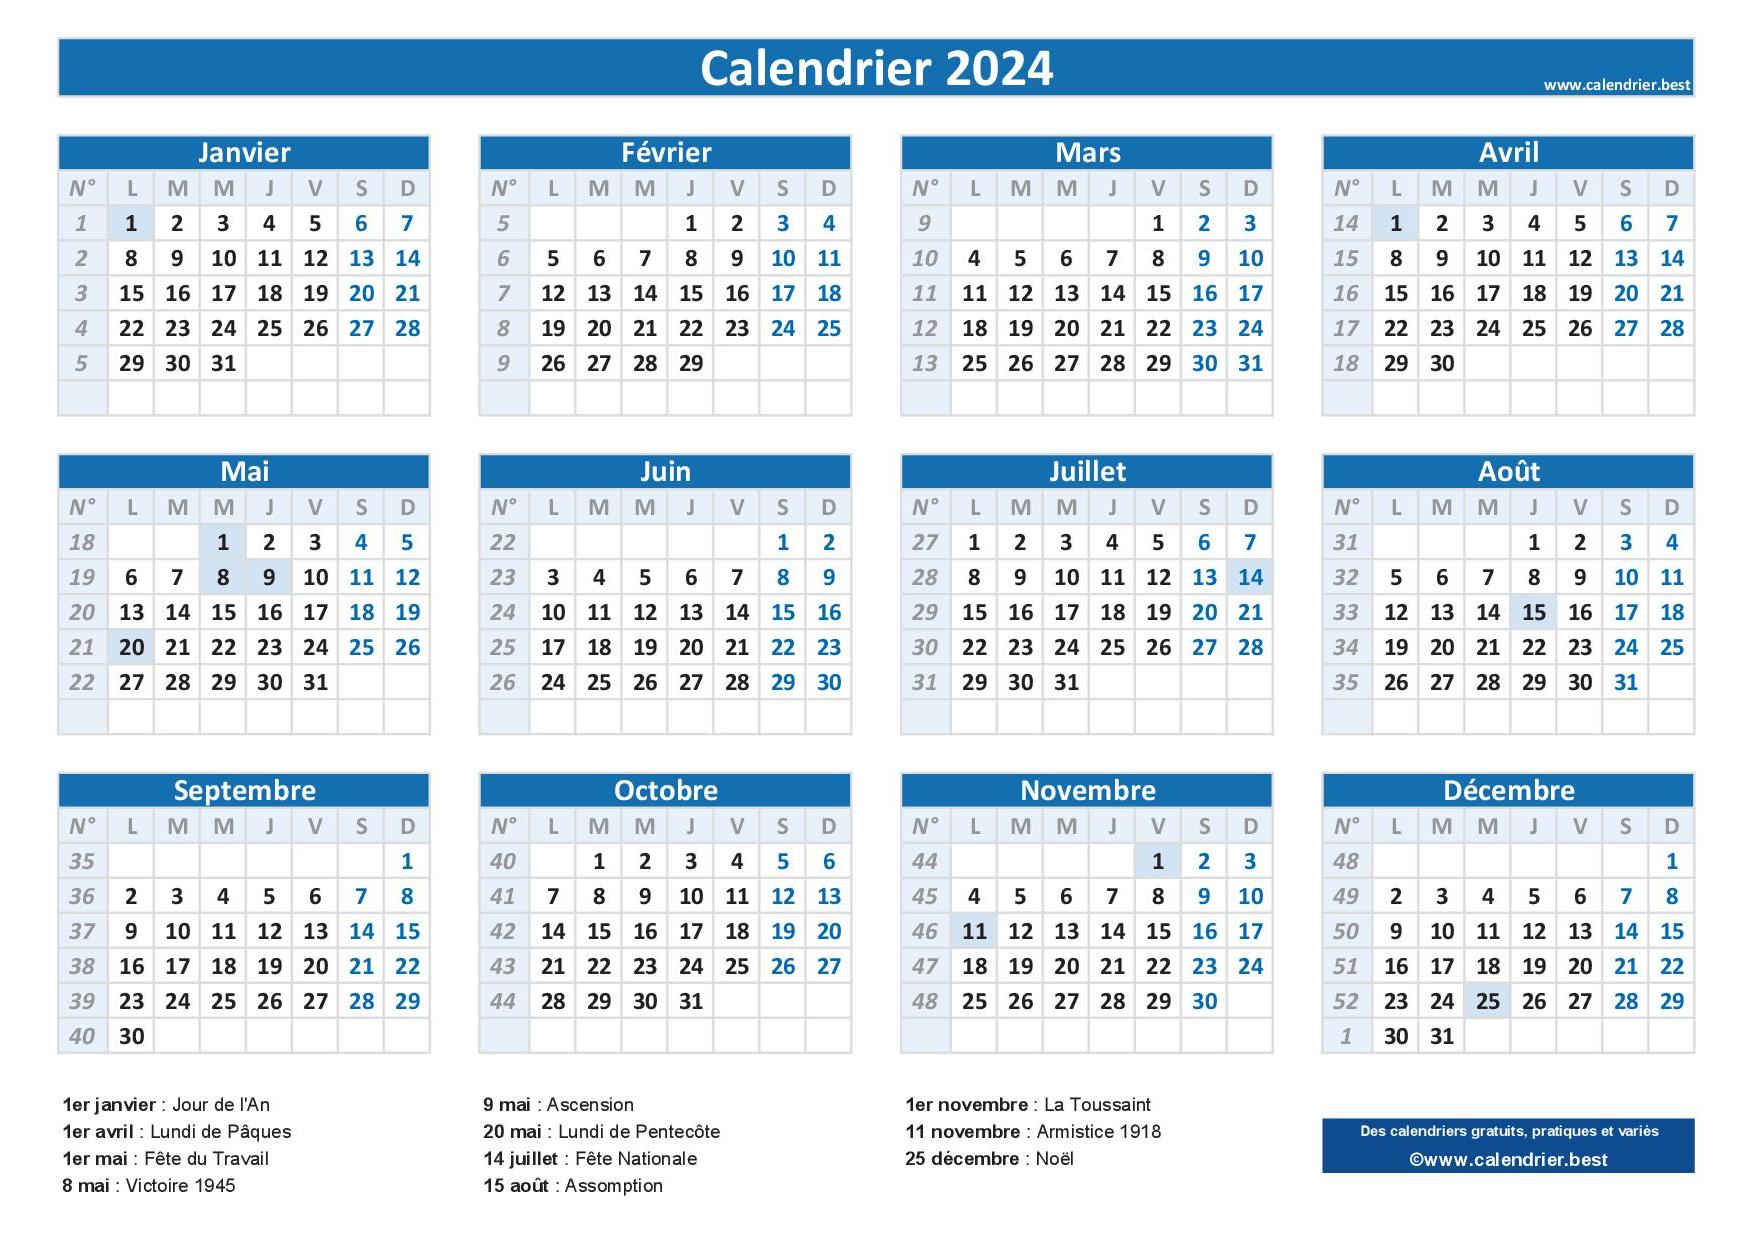 Jours fériés 2024 en France : dates et calendriers